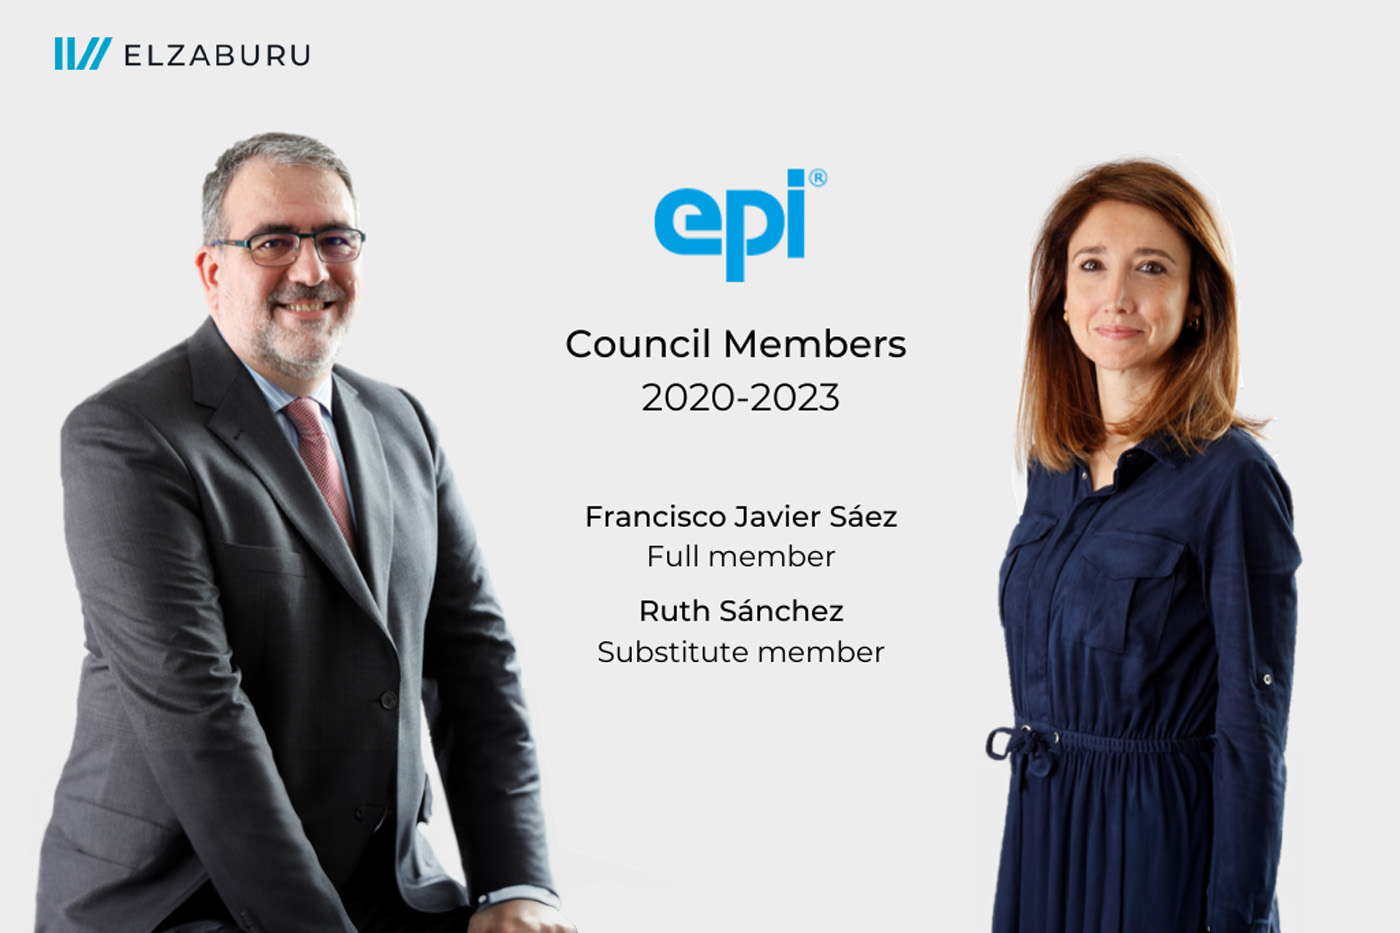 Francisco Javier Sáez 和 Ruth Sánchez 是 EPI 西班牙理事会成员